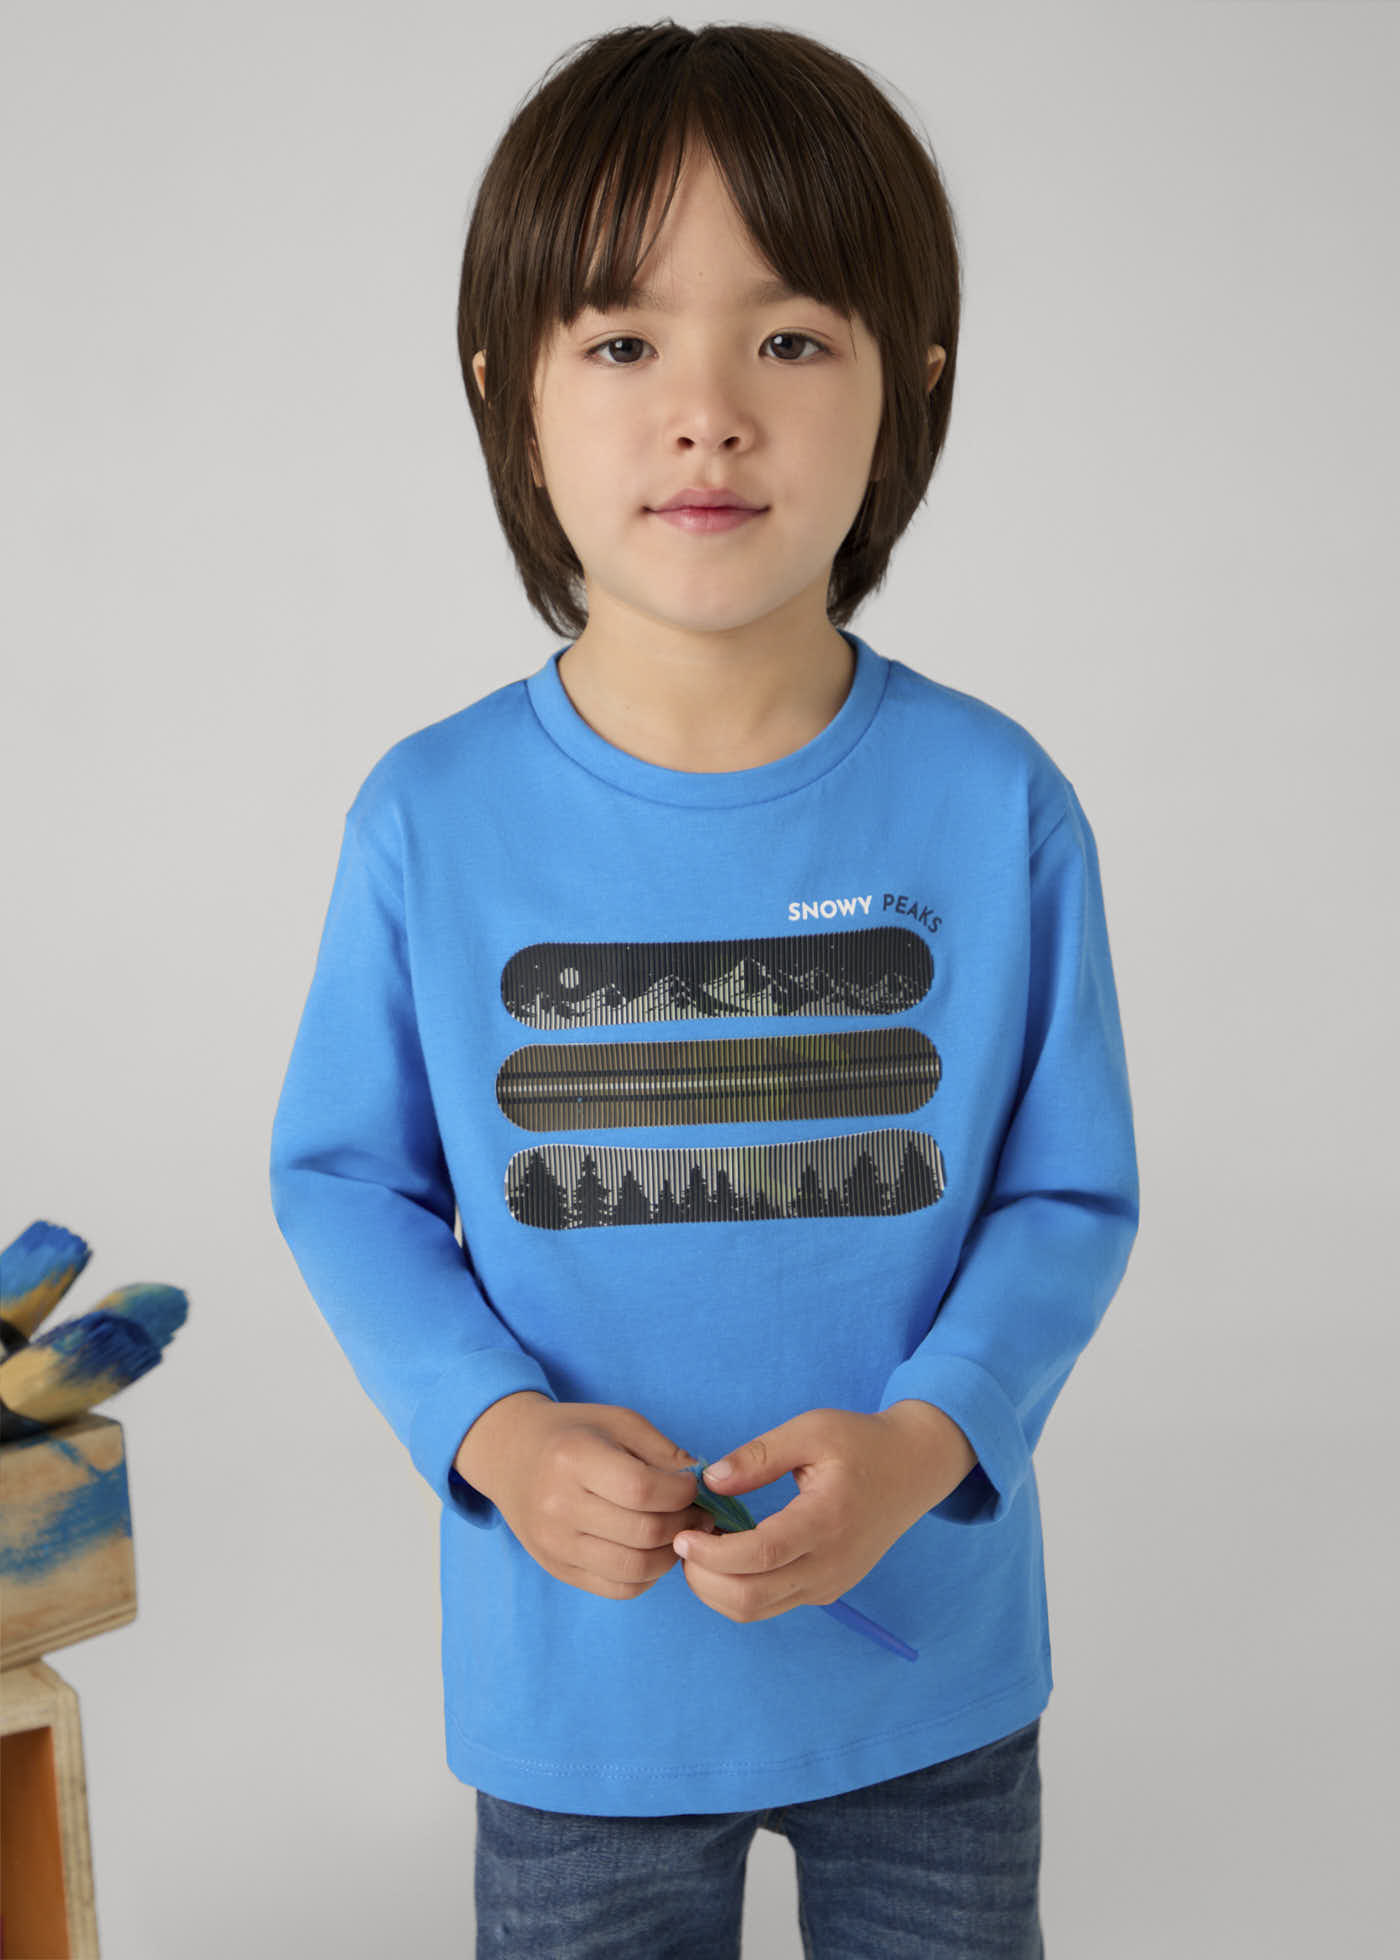 Lenticular design T-shirt for boys